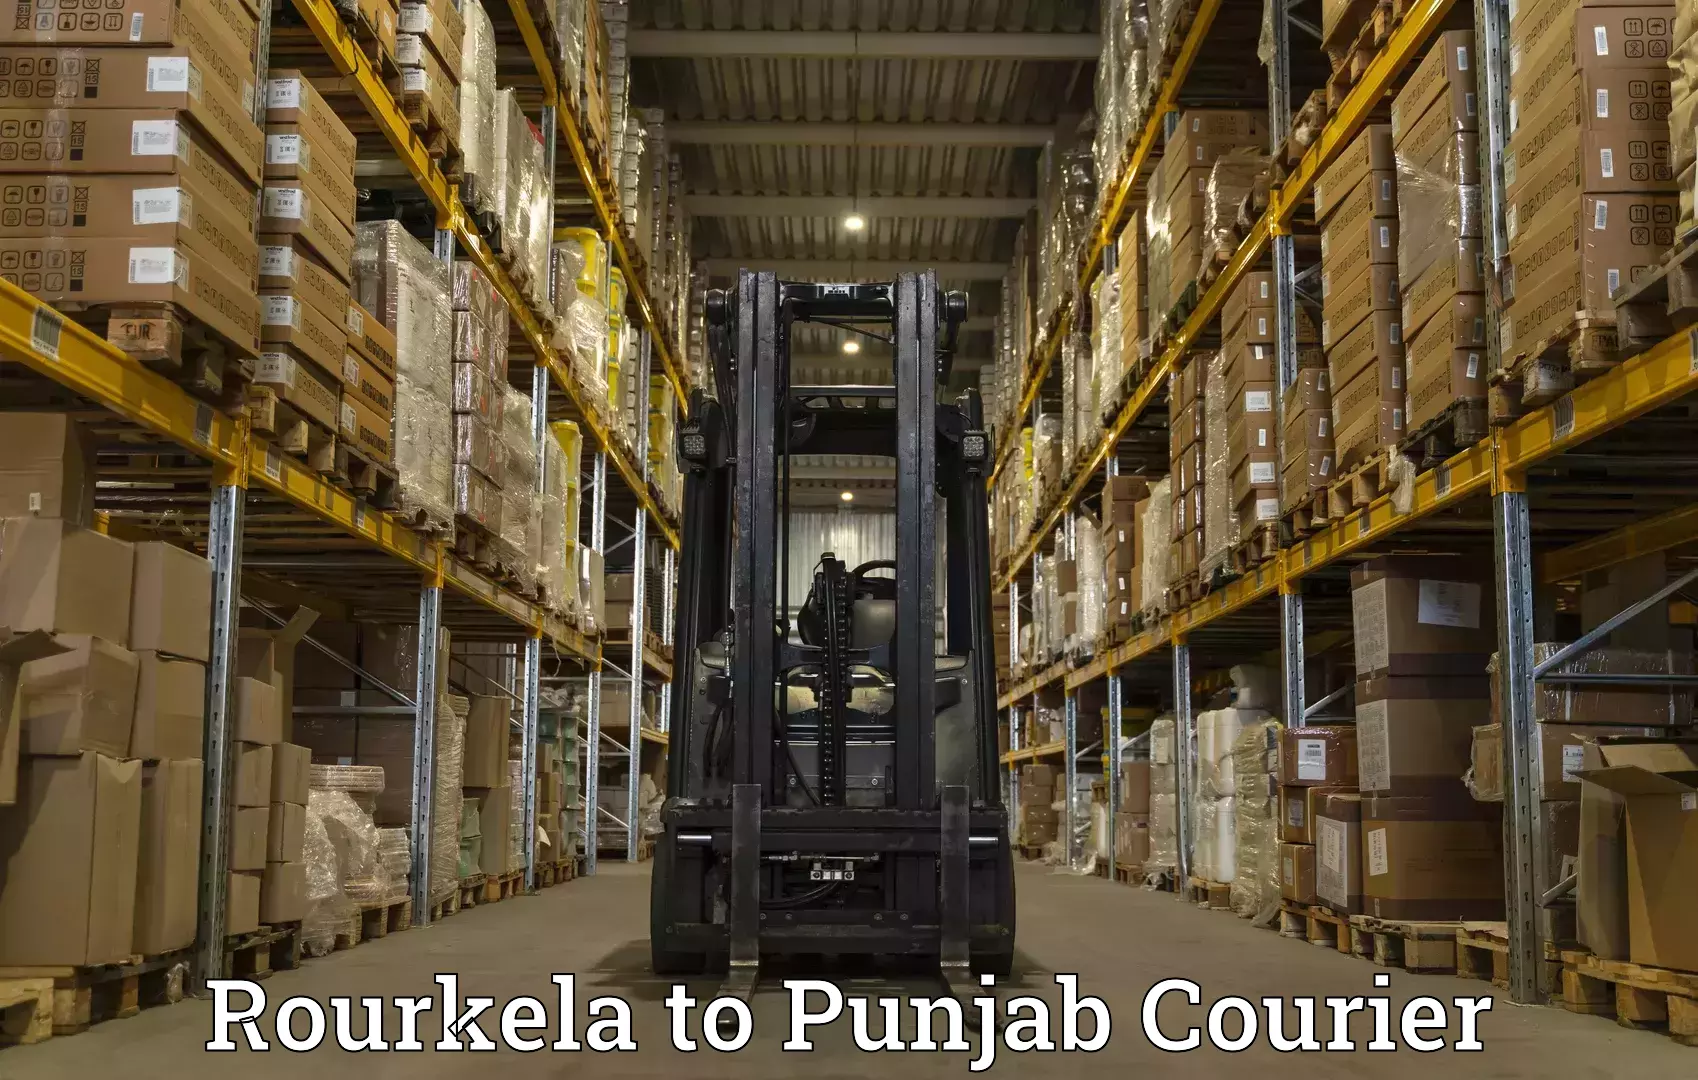 Courier service comparison Rourkela to Faridkot